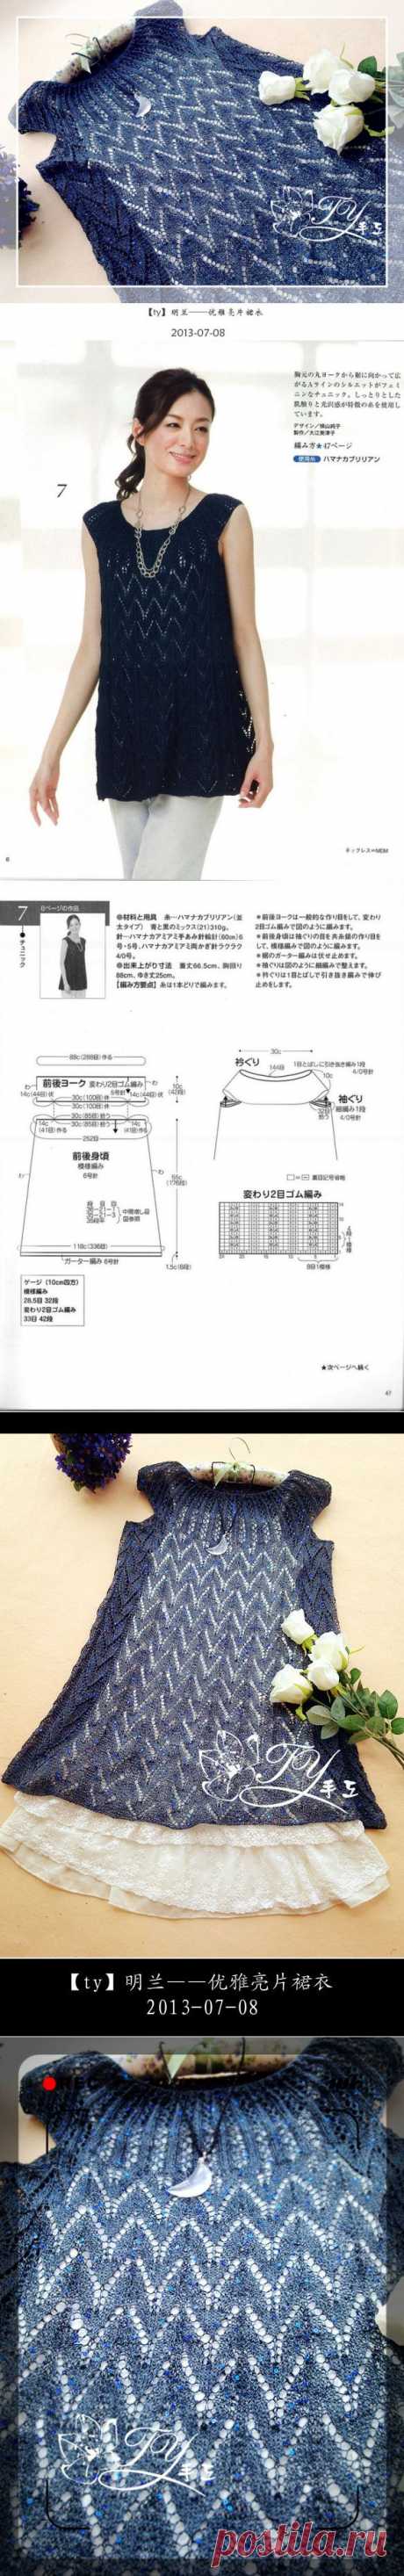 1328——明兰——优雅亮片裙衣 - ty的日志 - 网易博客